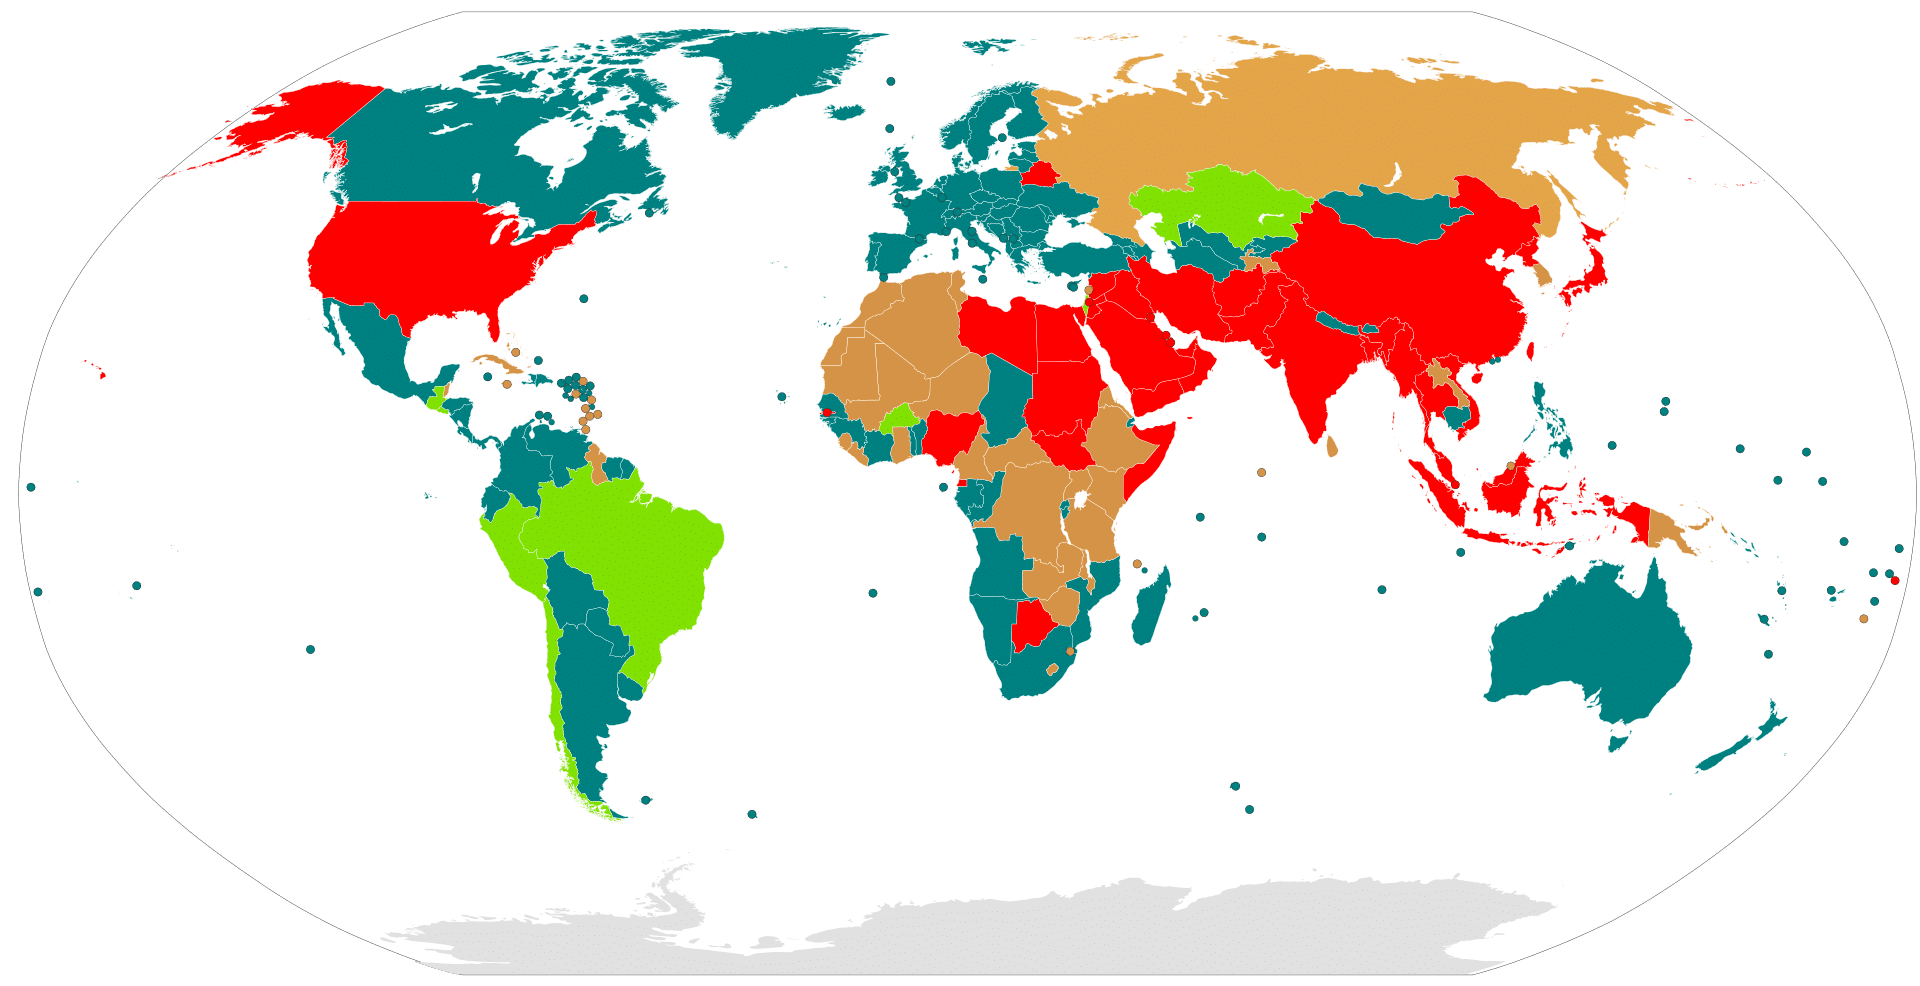 Экономическое развитие стран карта